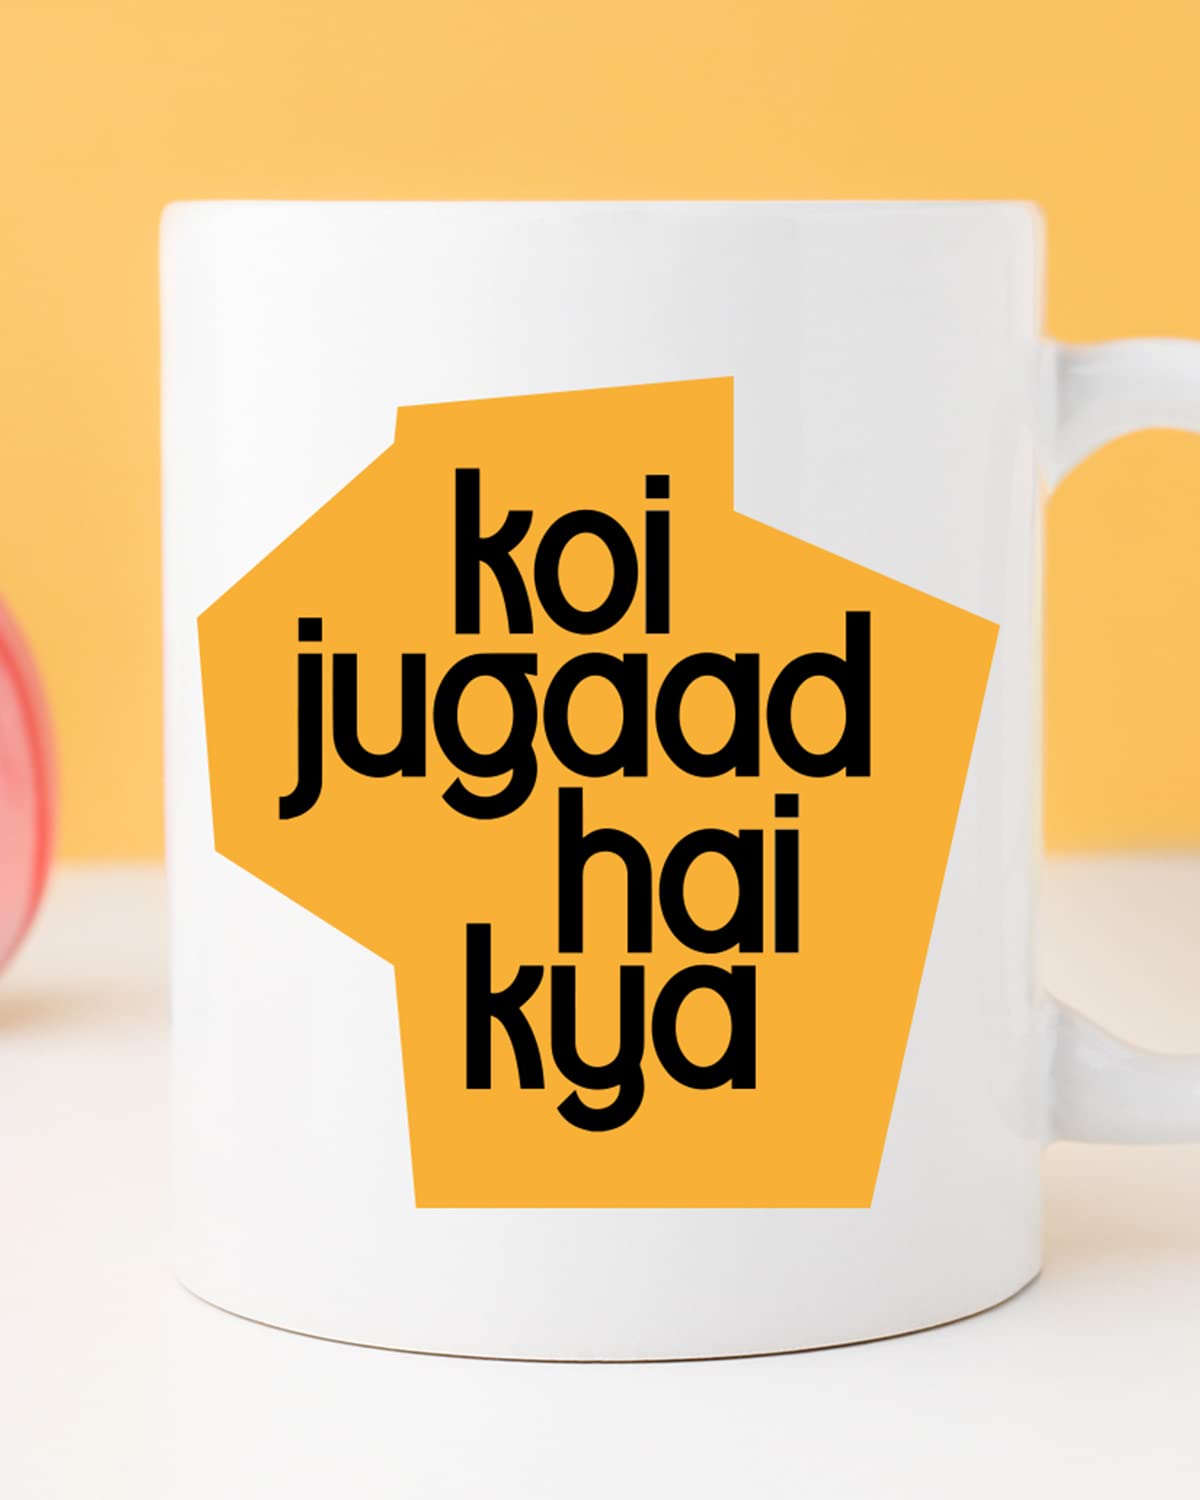 Funny Gift Sarcasm Mug Funny Coffee Mug Clever Quote Mug 